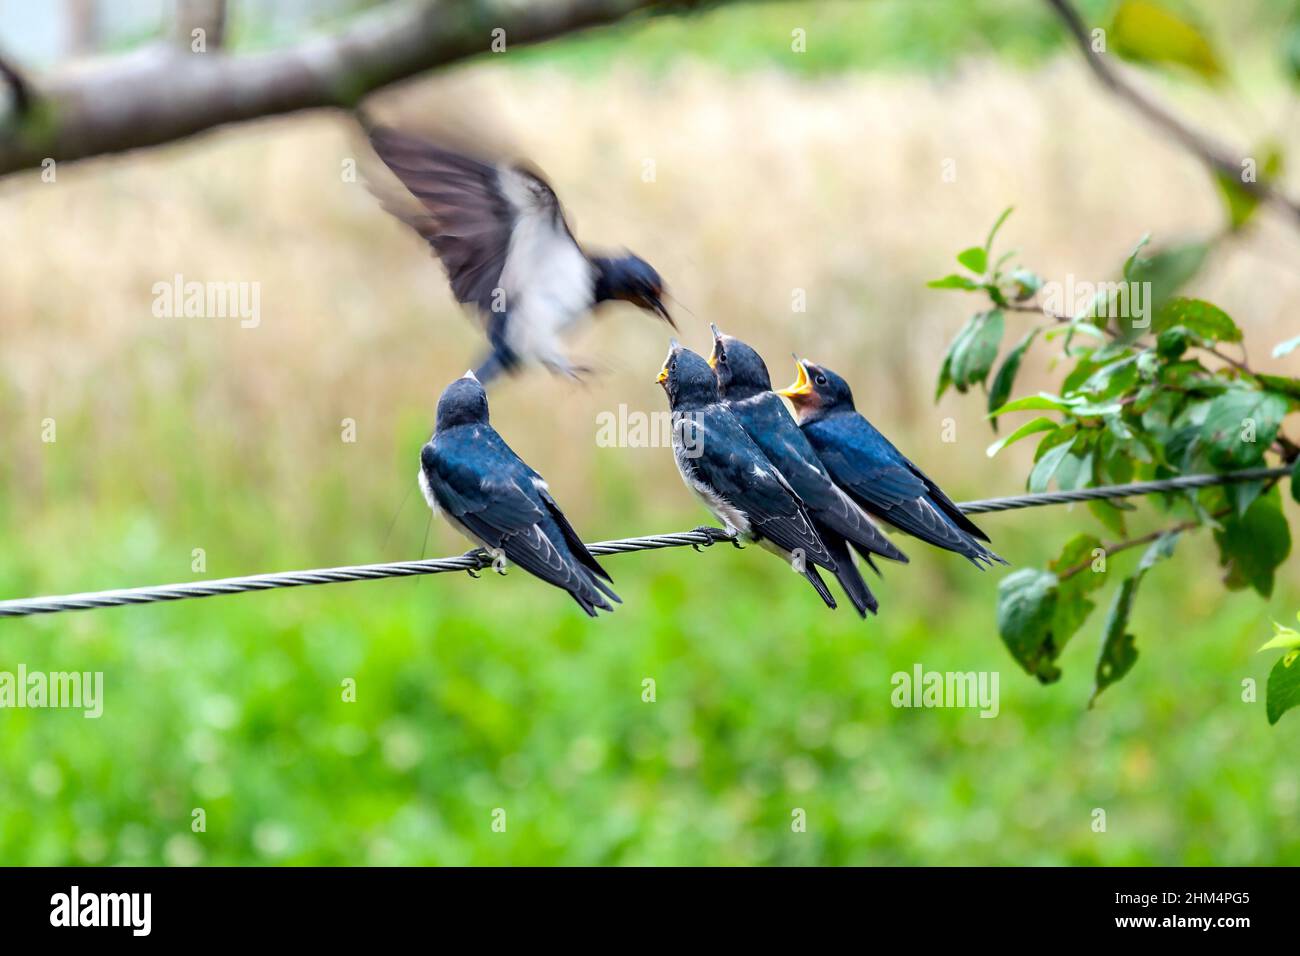 inghiottire l'alimentazione dell'uccello nestlings Foto Stock